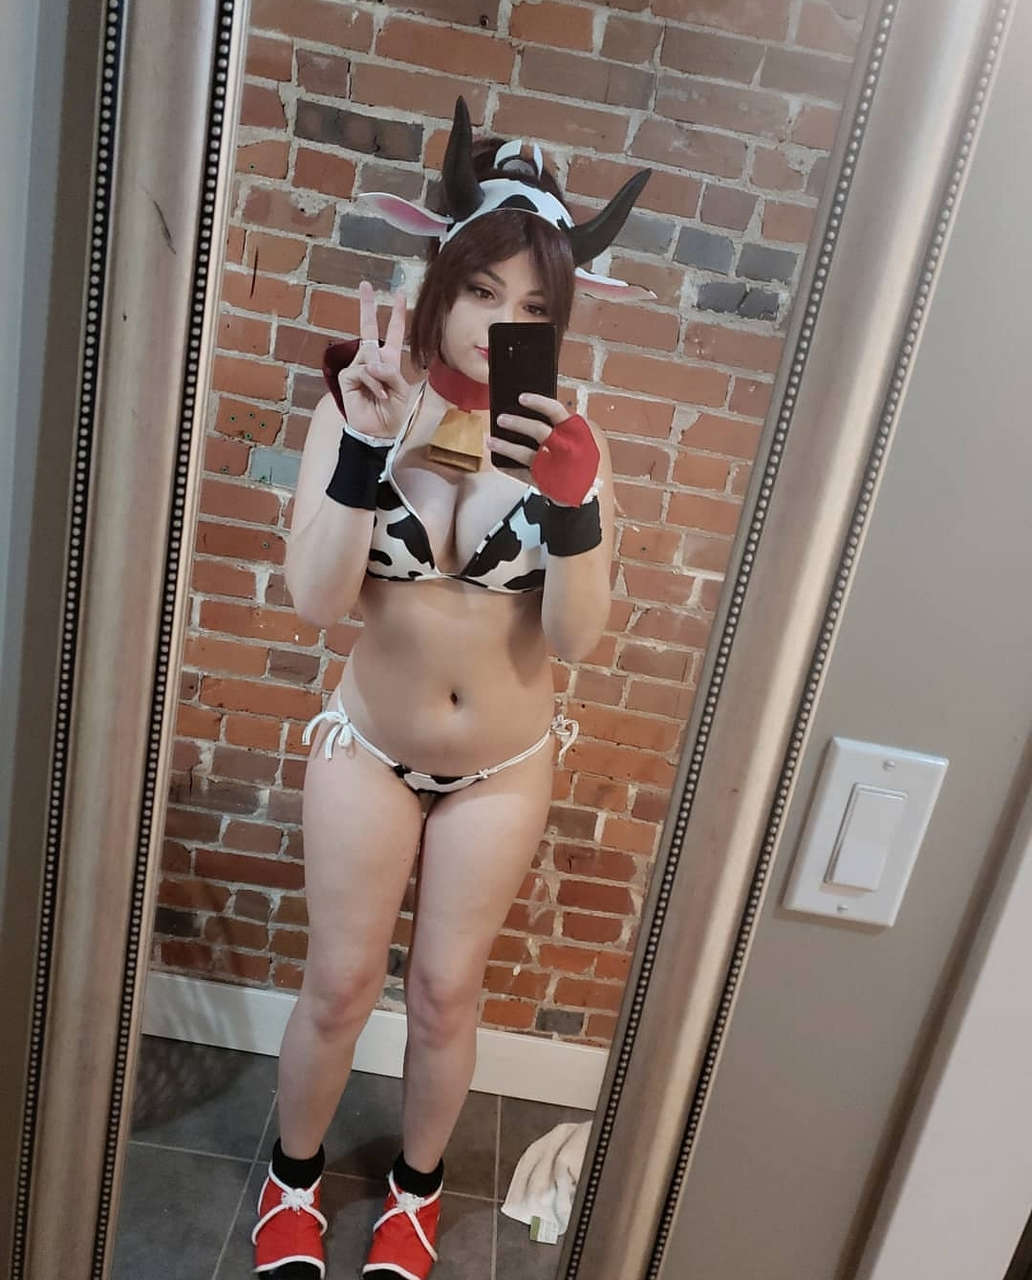 Bikini Cow Girl By Oki Cosp